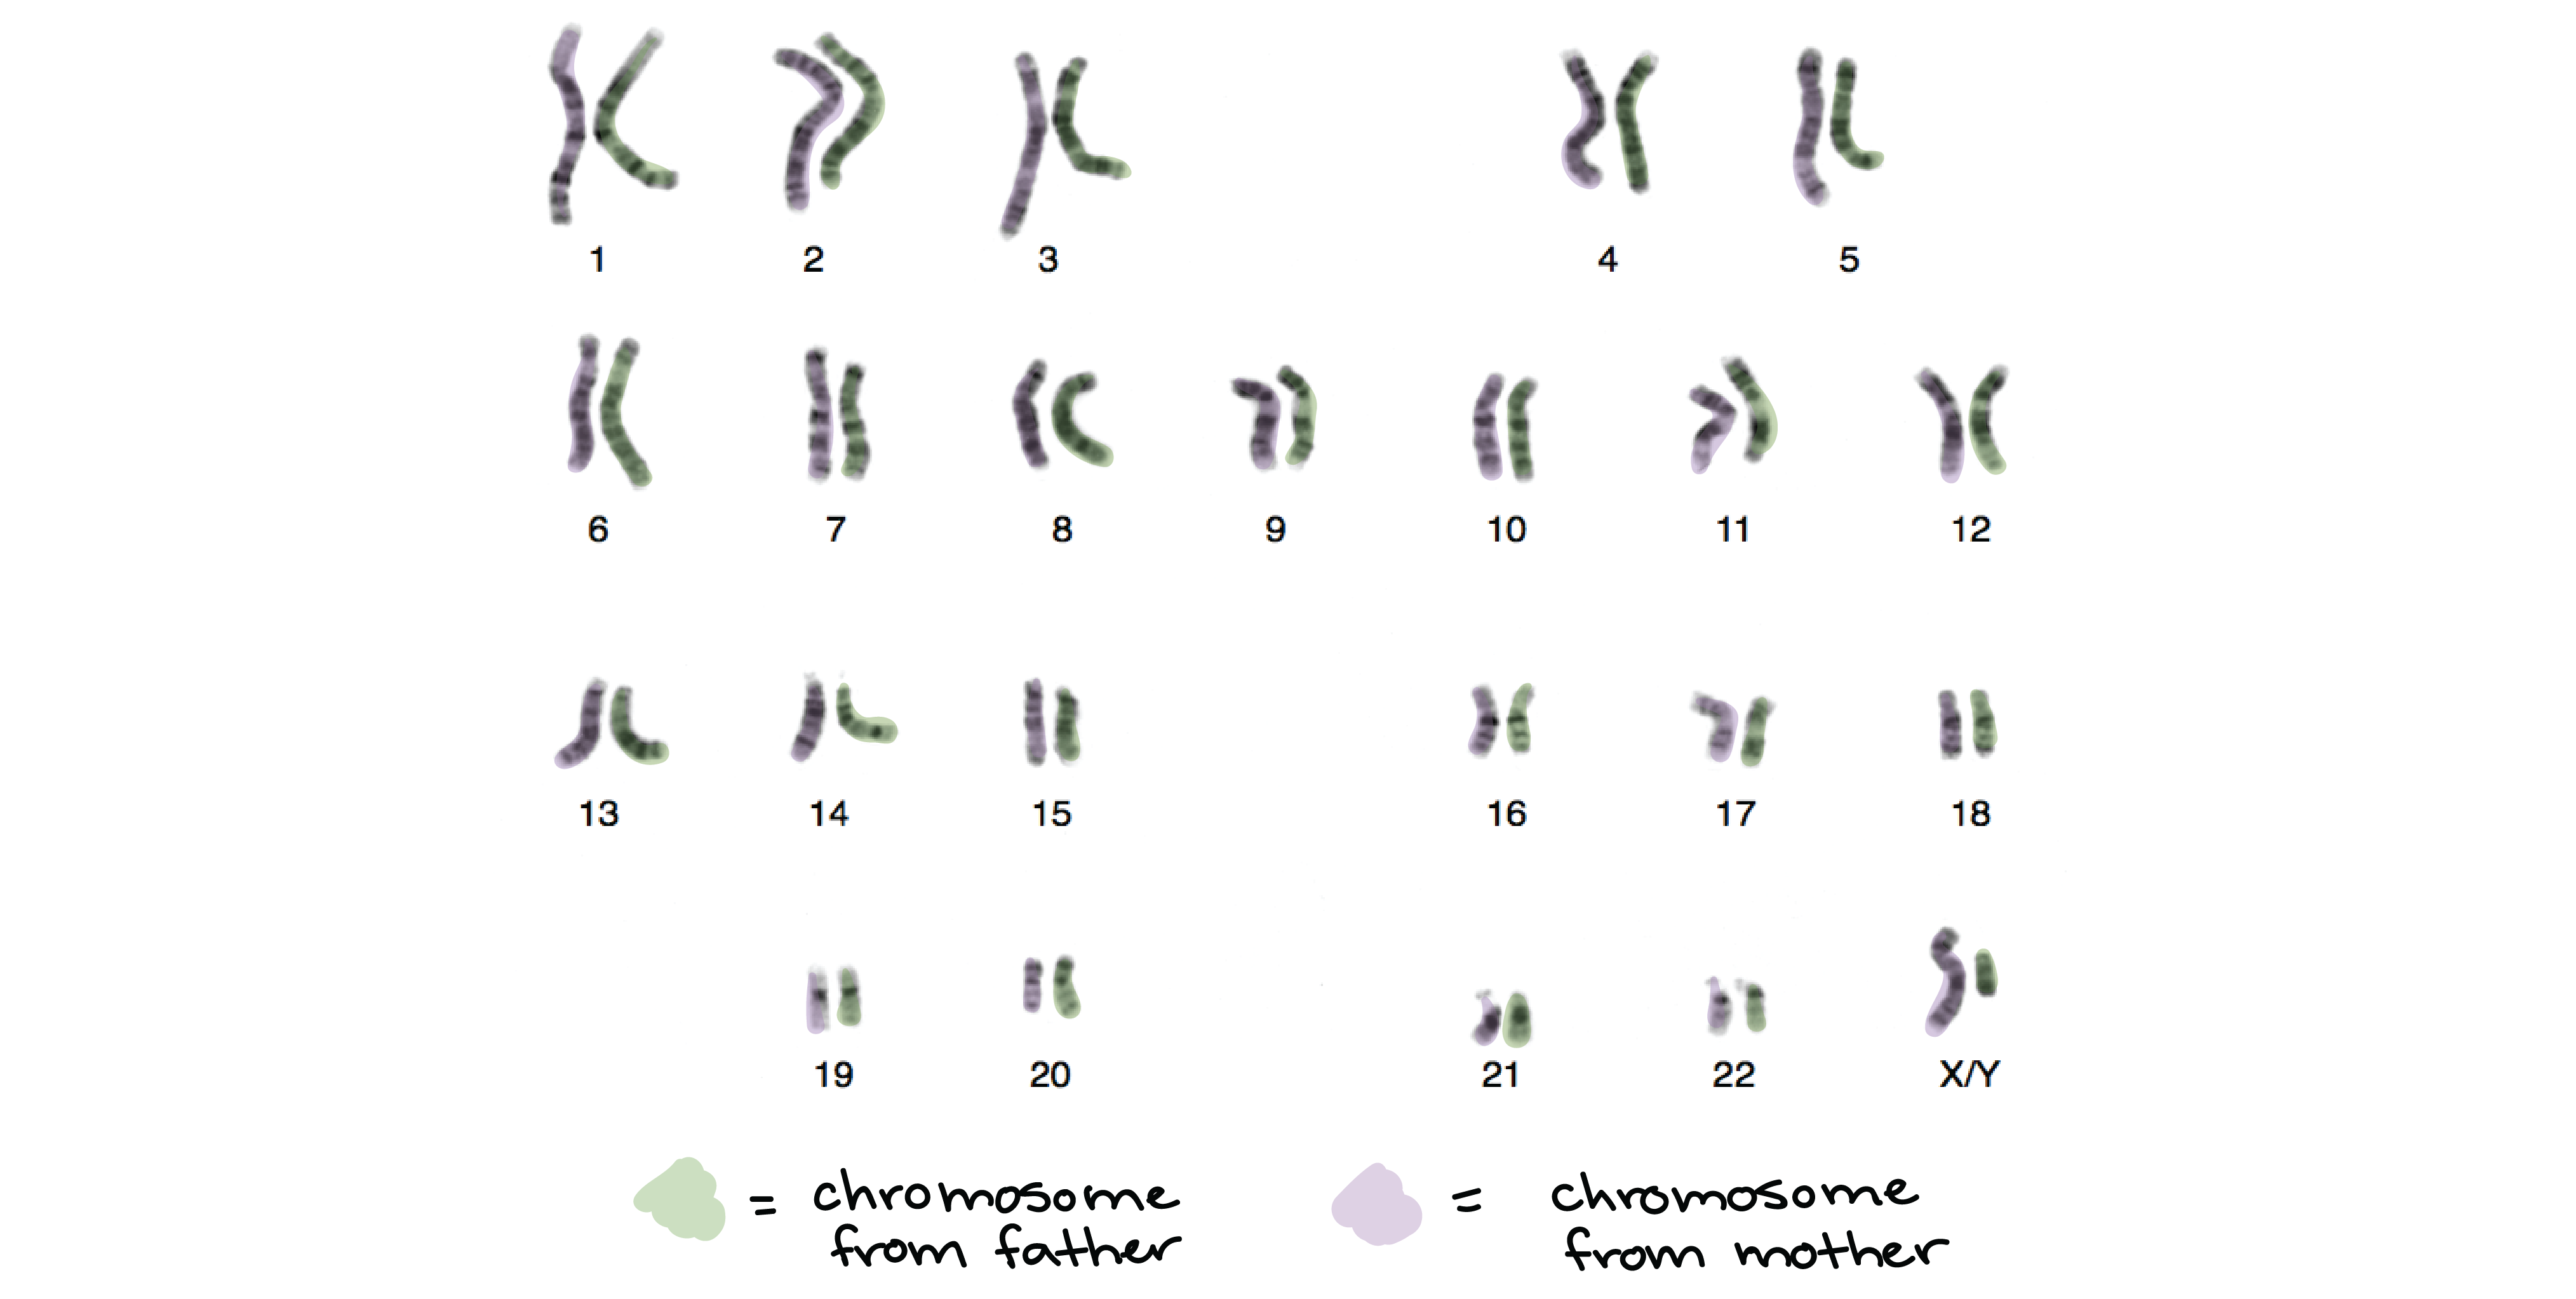 Chromosomes in sperm cells